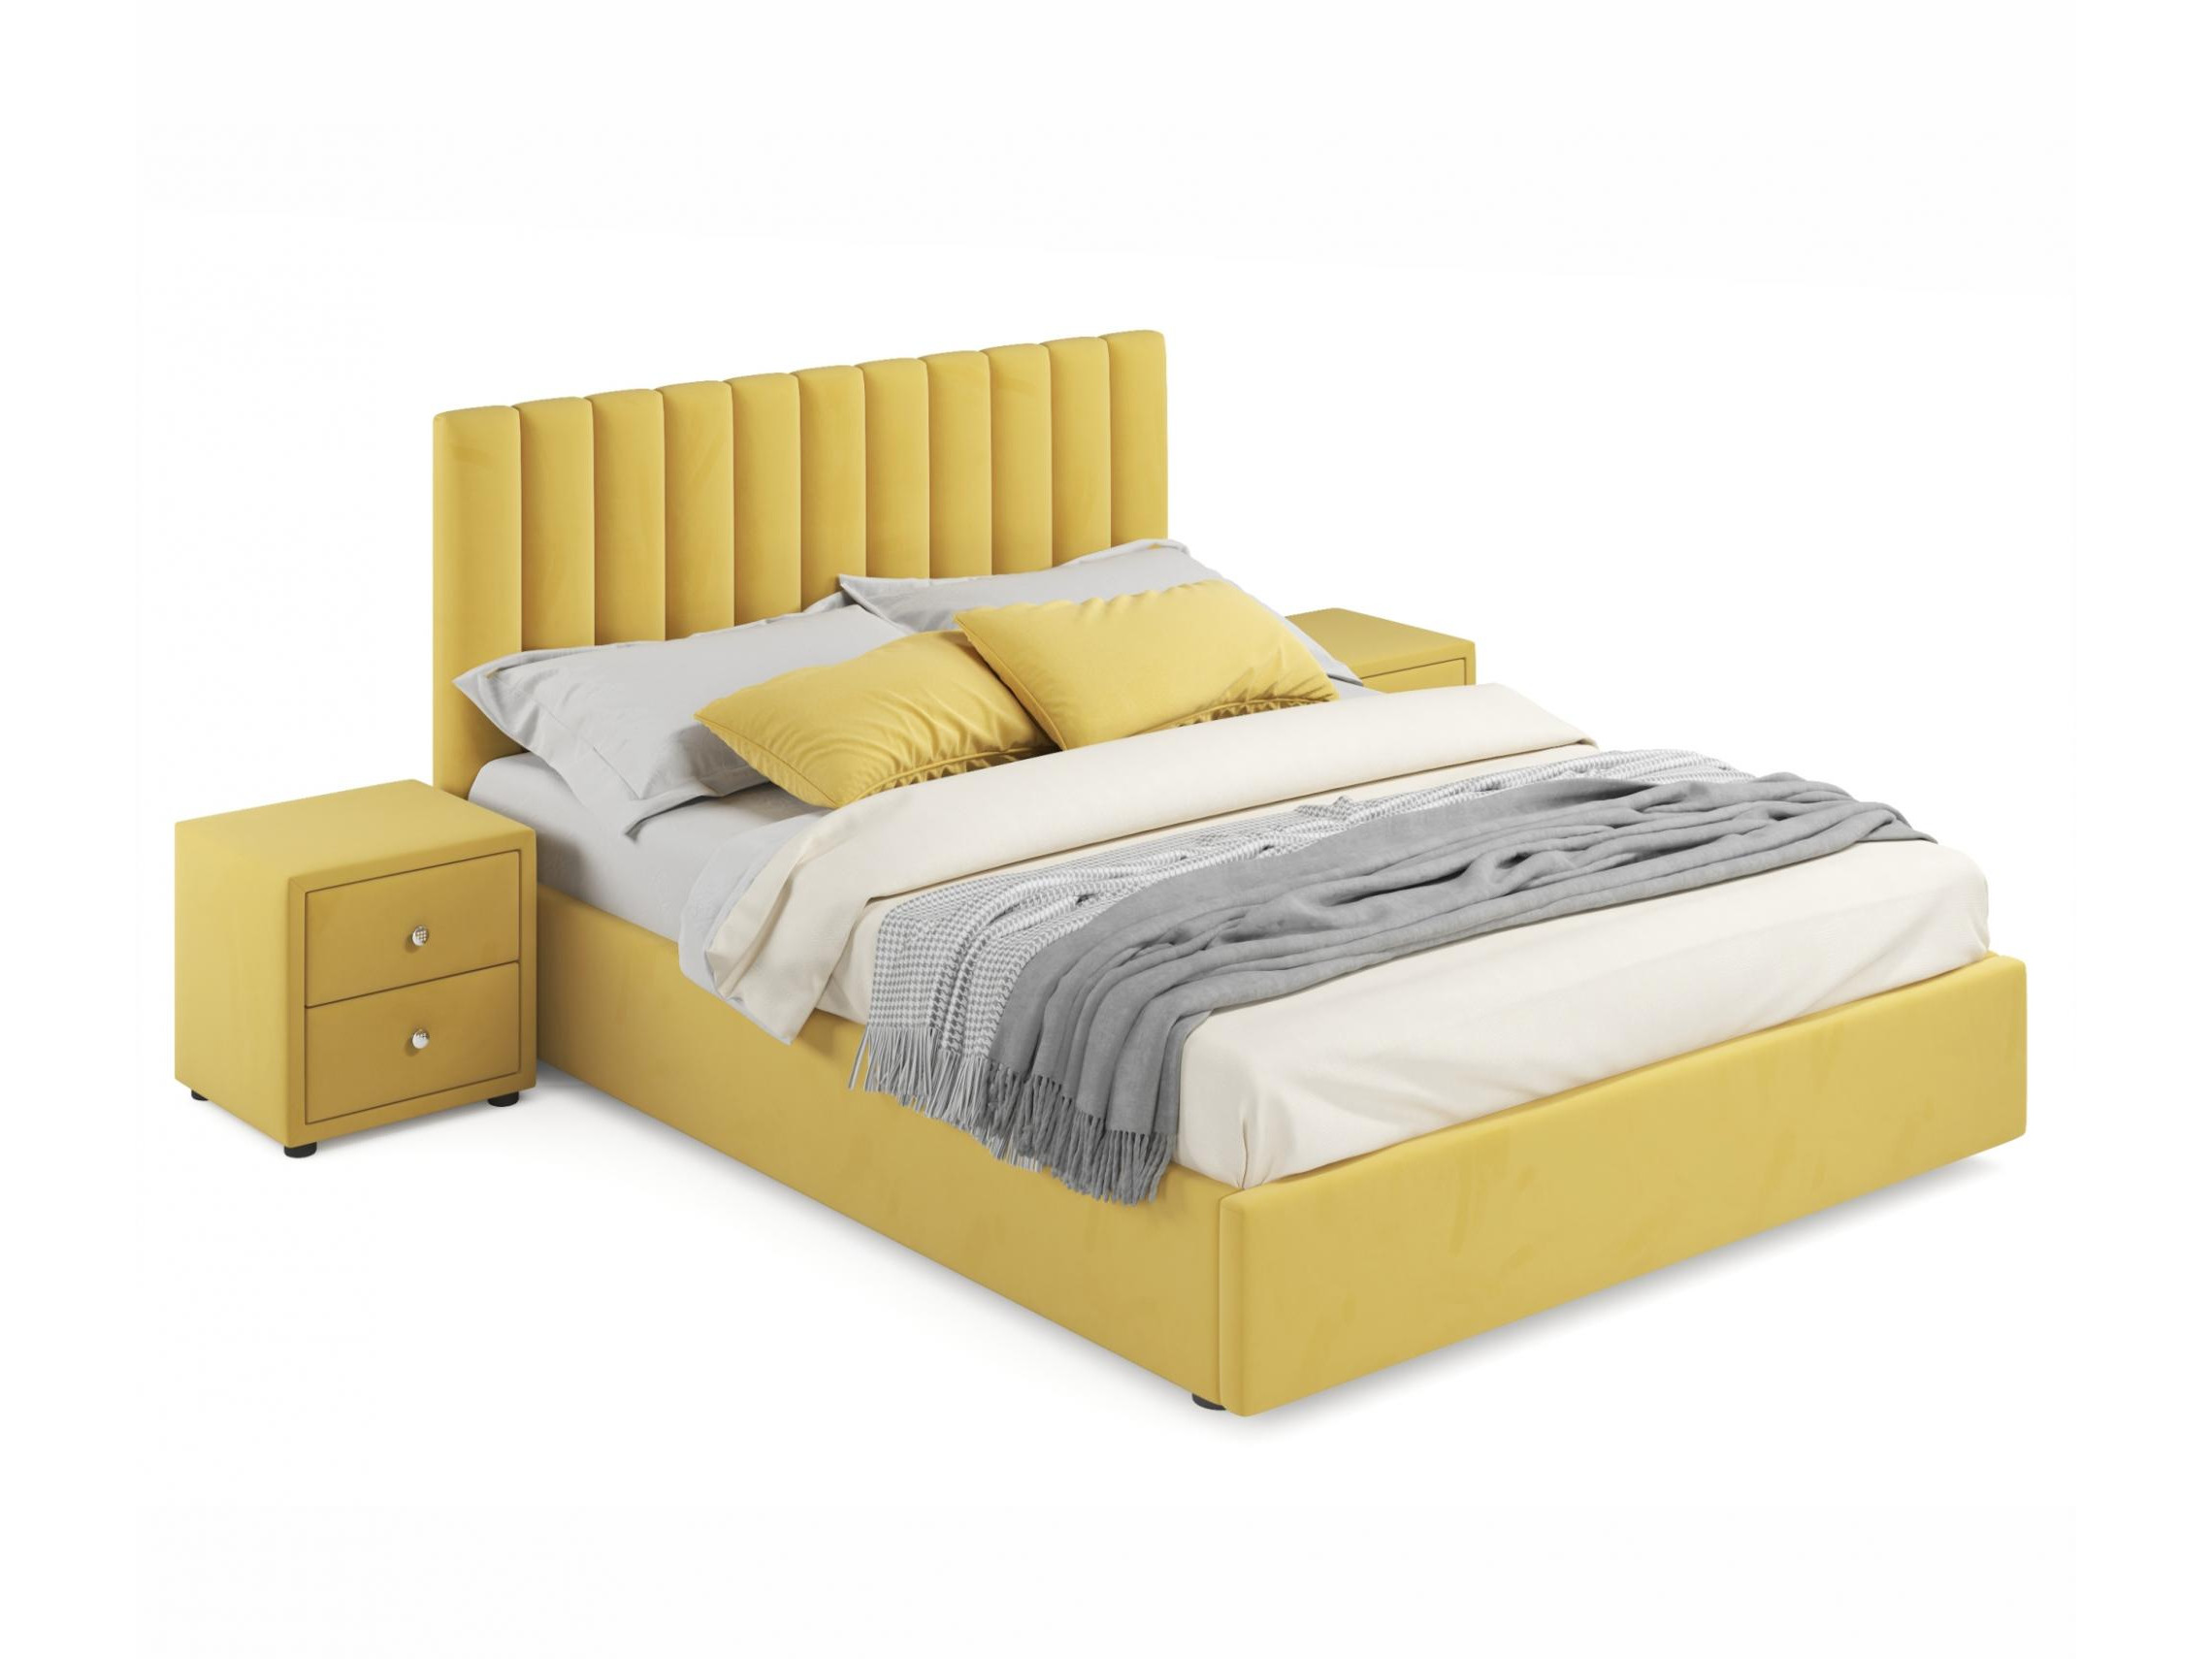 мягкая кровать olivia 1800 желтая с подъемным механизмом желтый желтый велюр дсп Мягкая кровать с тумбами Olivia 1600 желтая с подъемным механизмом желтый, Желтый, Велюр, ДСП